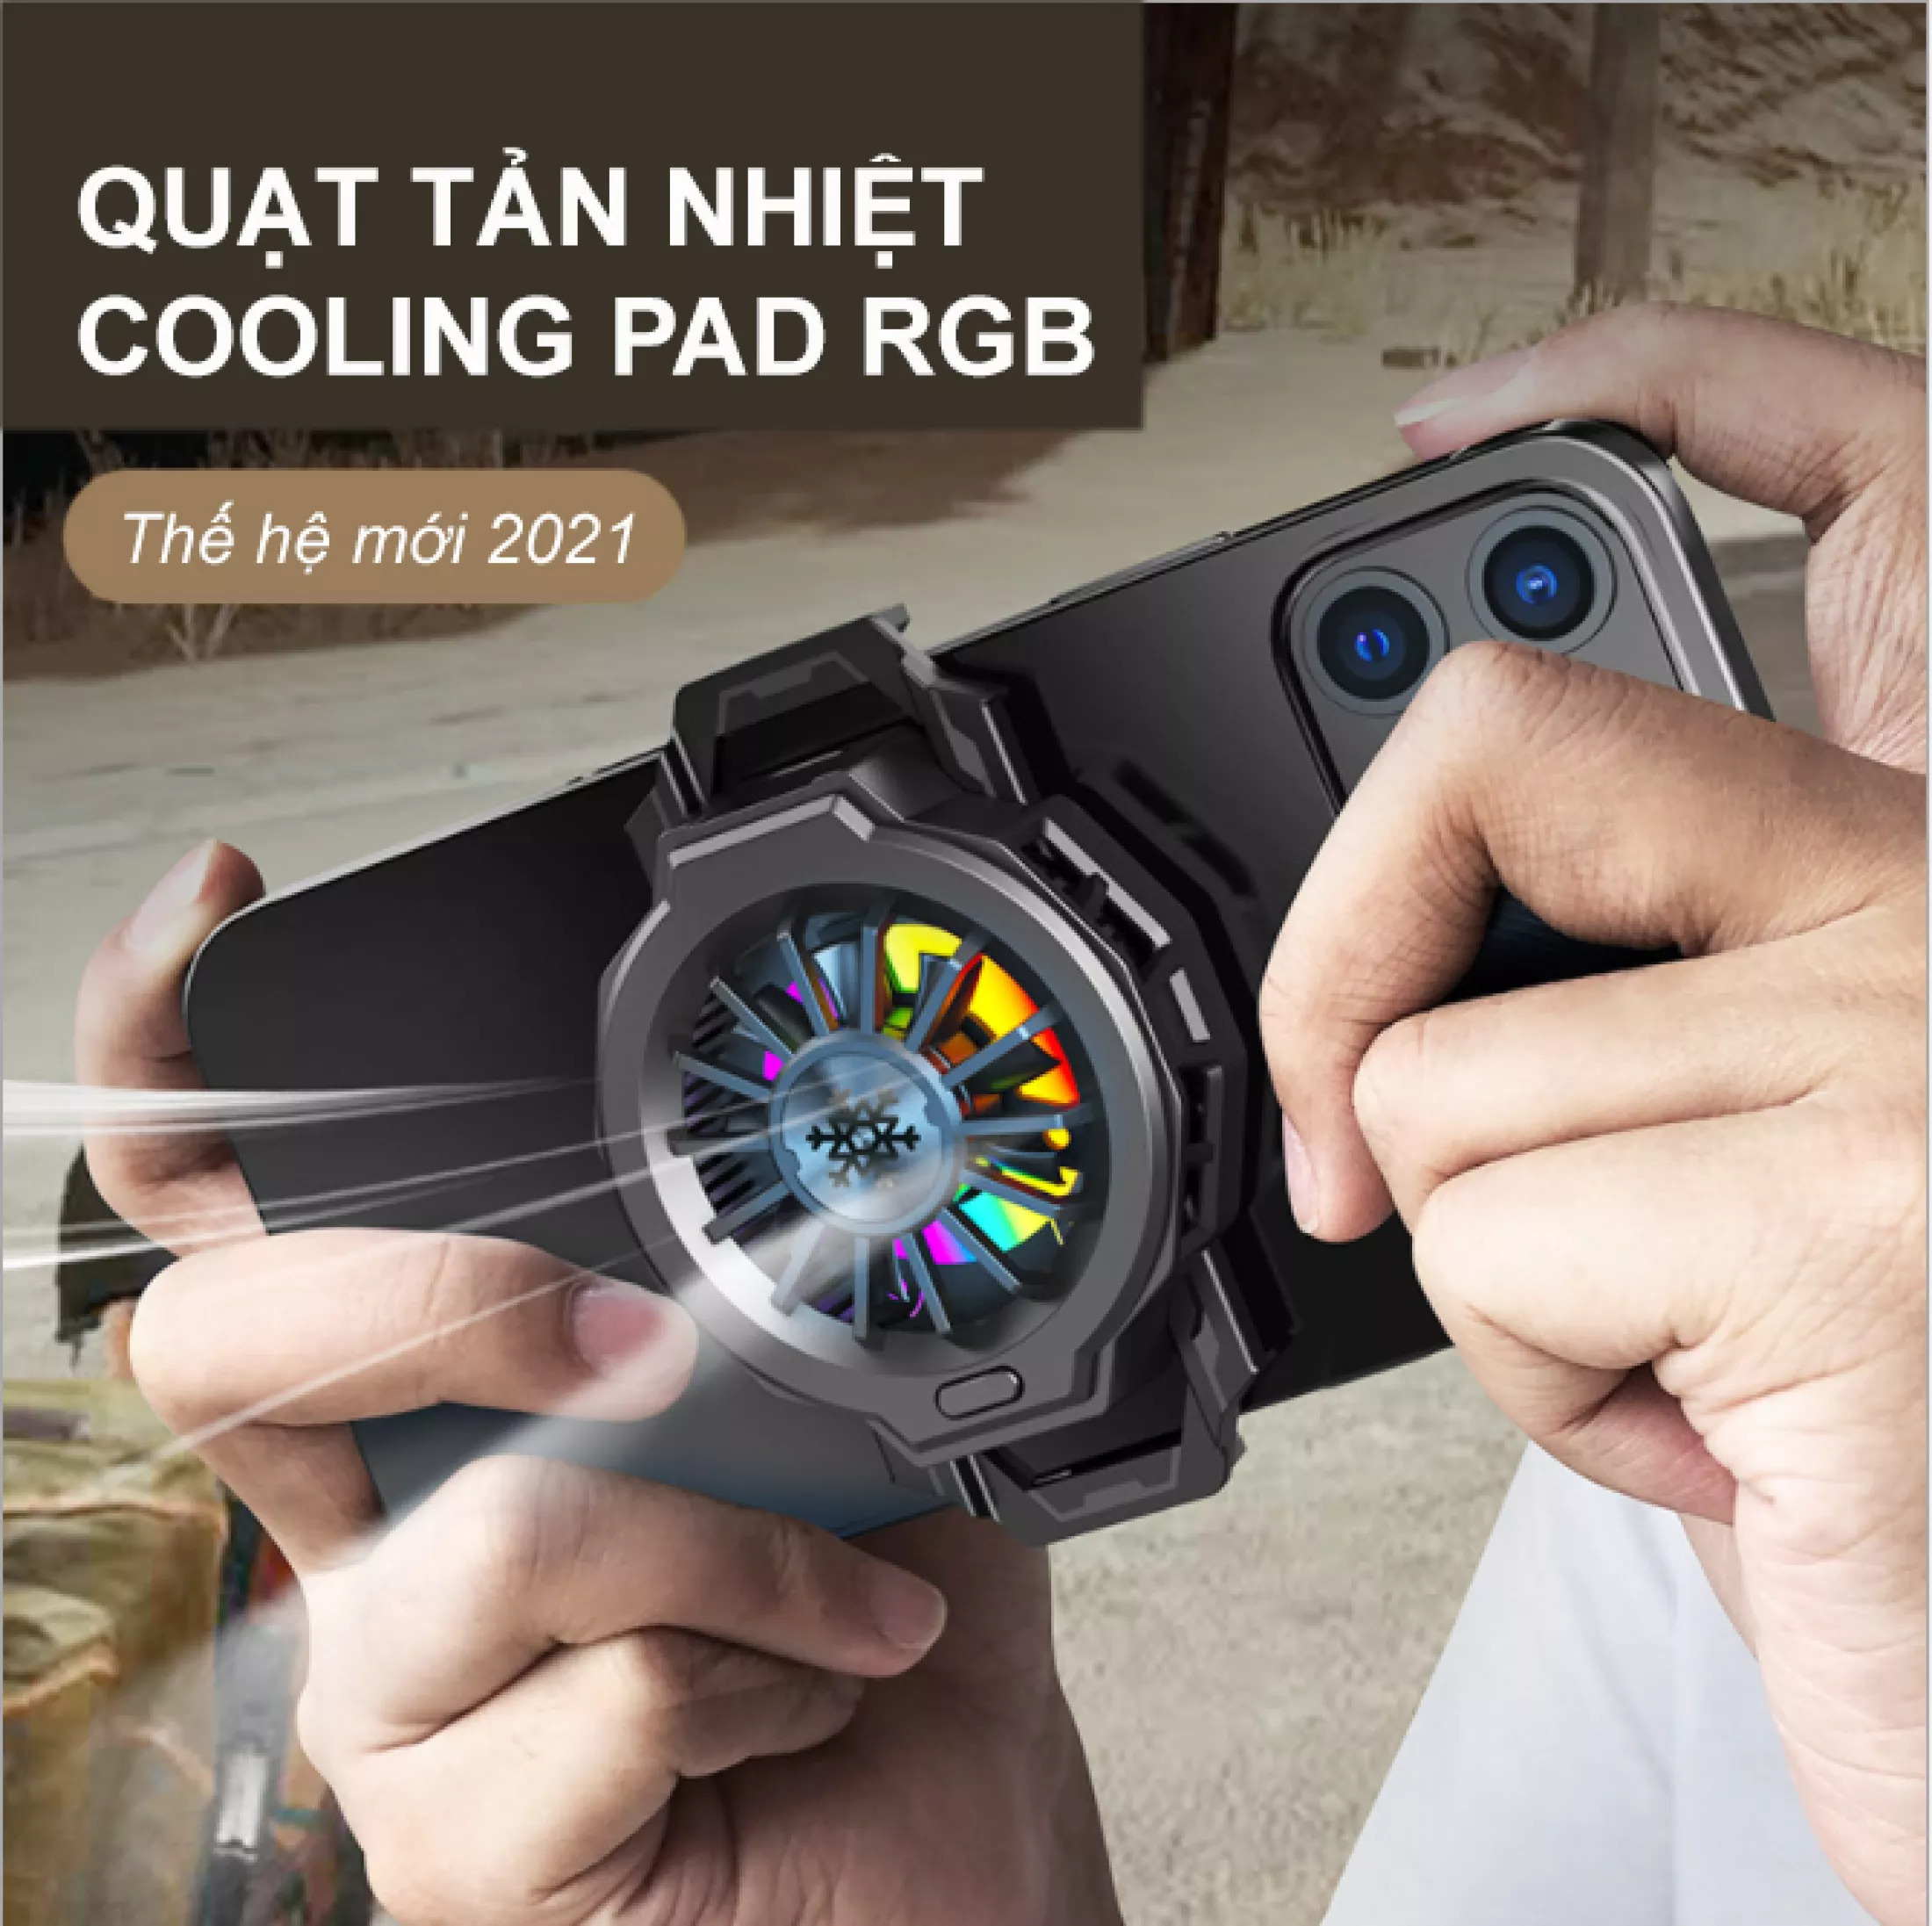 Quạt tản nhiệt điện thoại Cooling Pad RGB cực mát cho điện thoại thế hệ mới - Dòng máy tản nhiệt làm mát siêu nhanh với đèn đa màu RGB phong cách